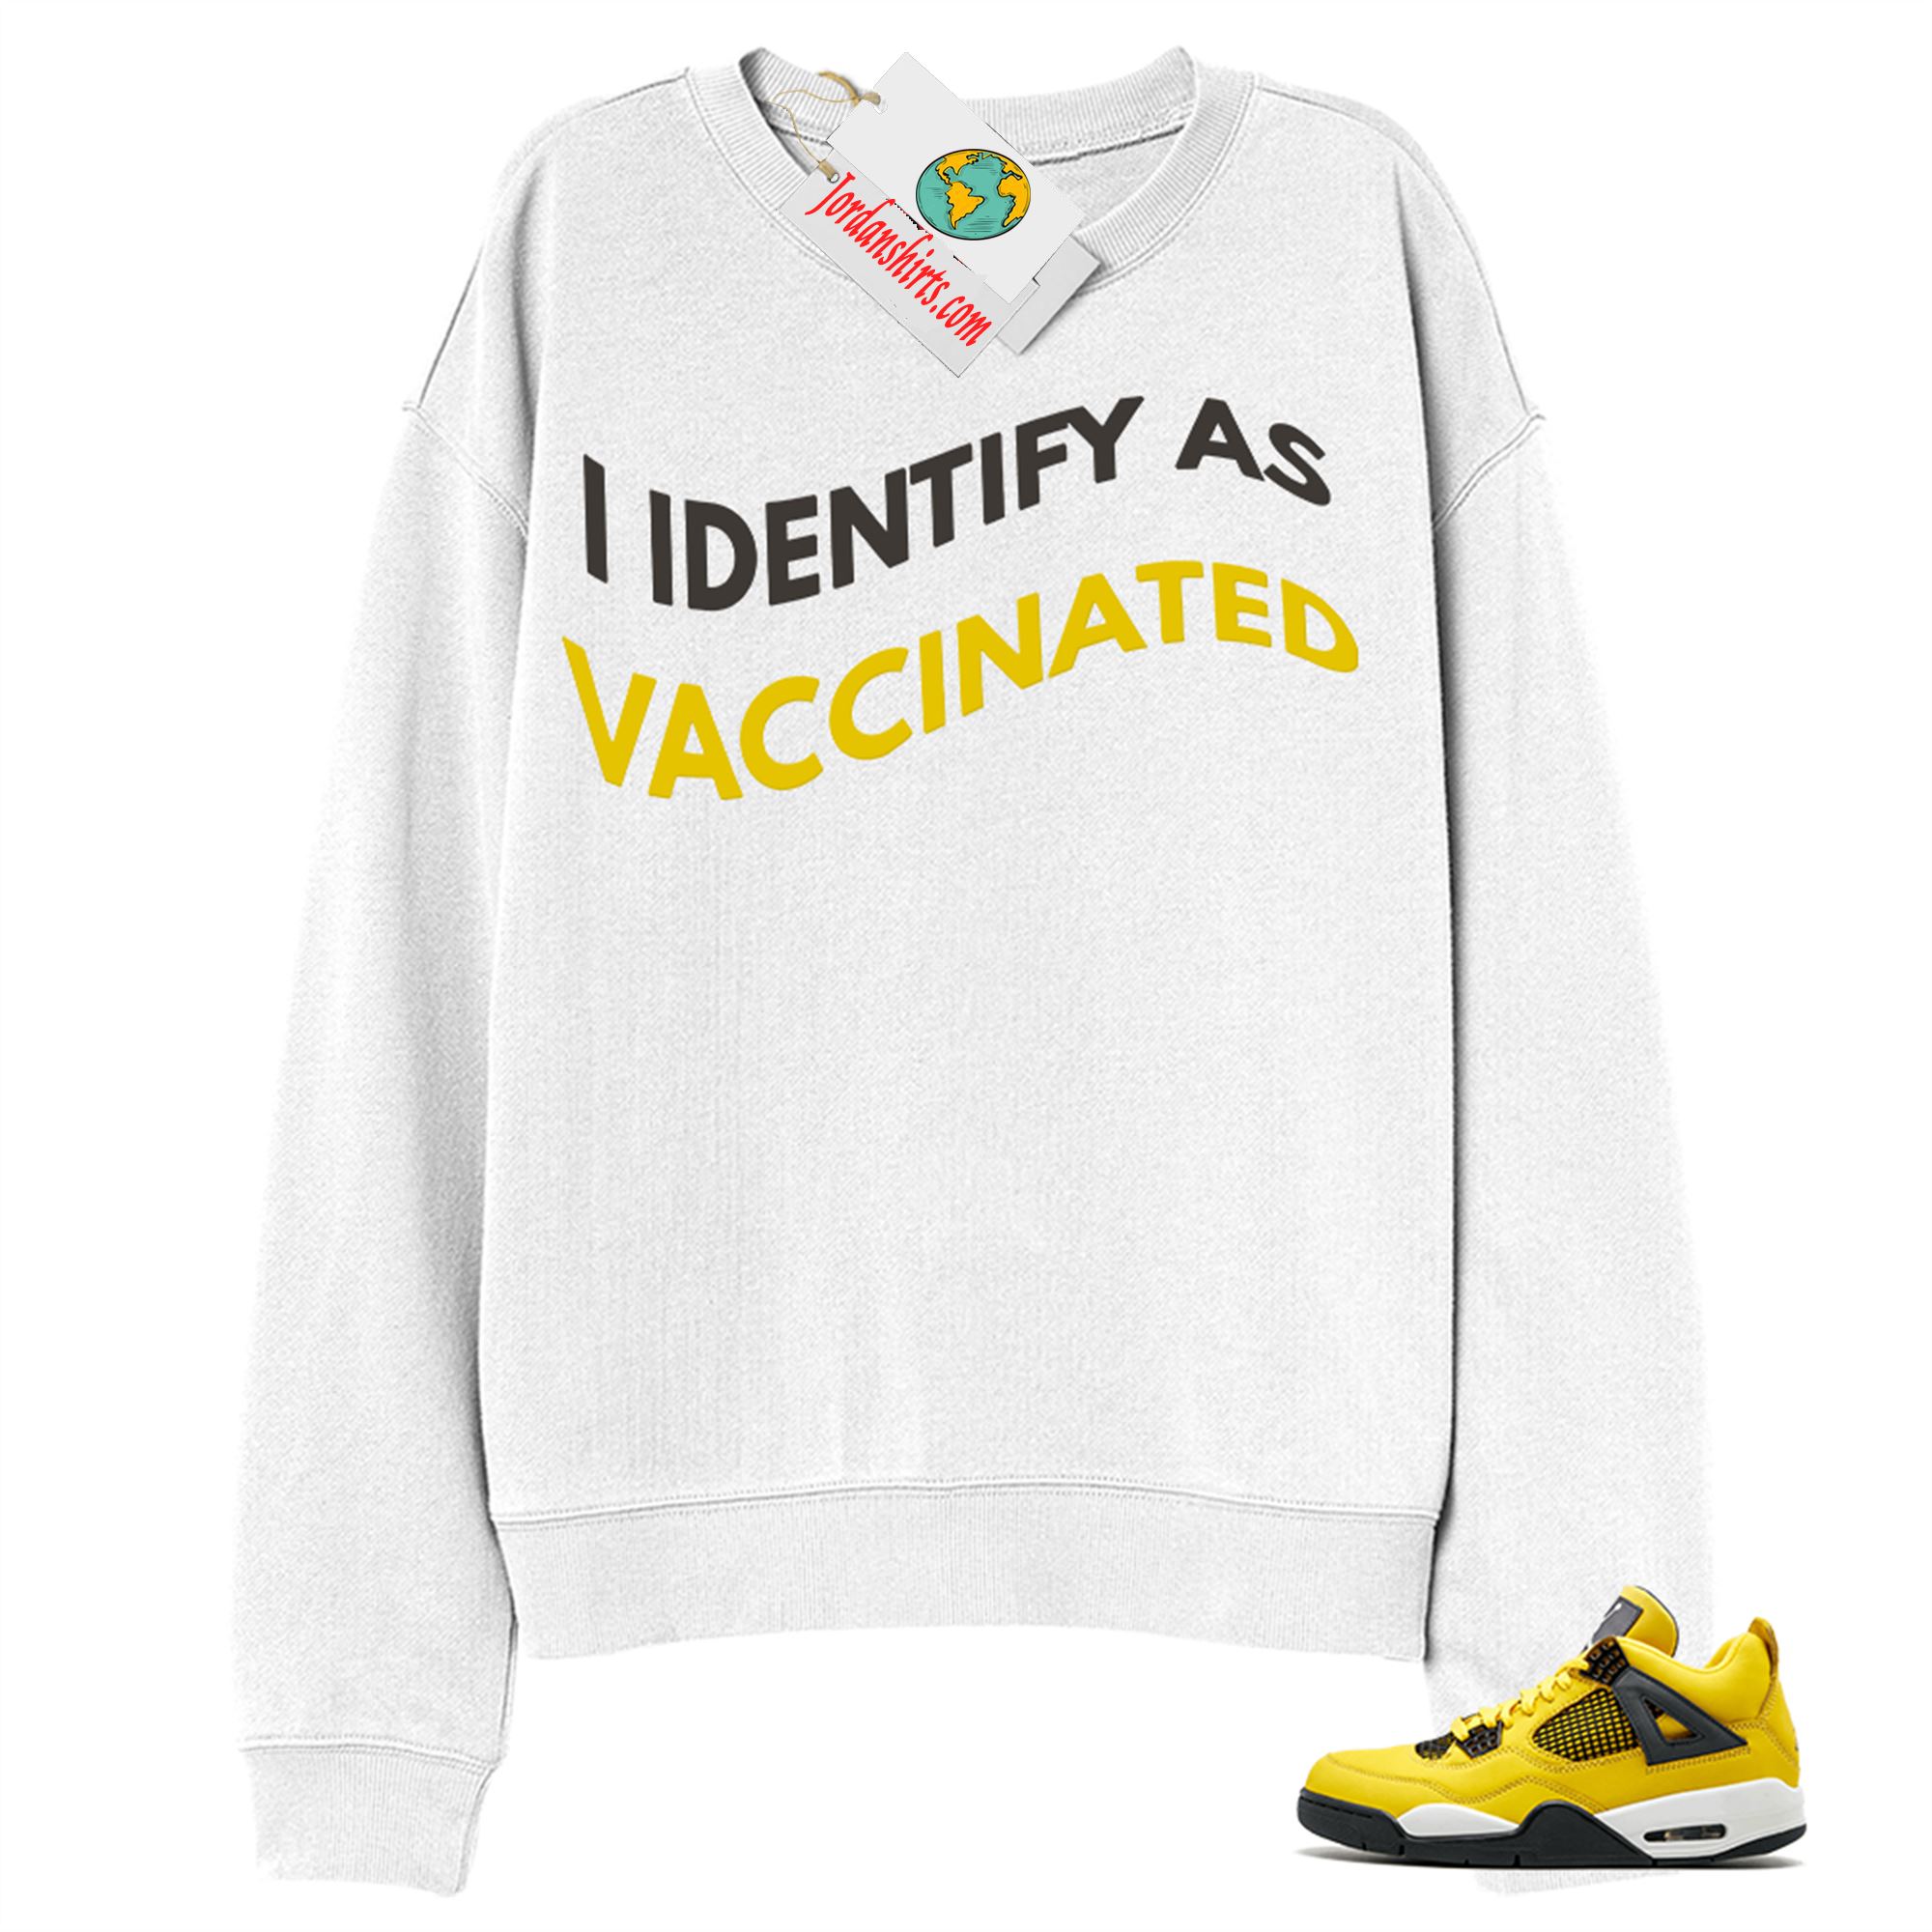 Jordan 4 Sweatshirt, I Identify As Vaccinated White Sweatshirt Air Jordan 4 Tour Yellow Lightning 4s Size Up To 5xl